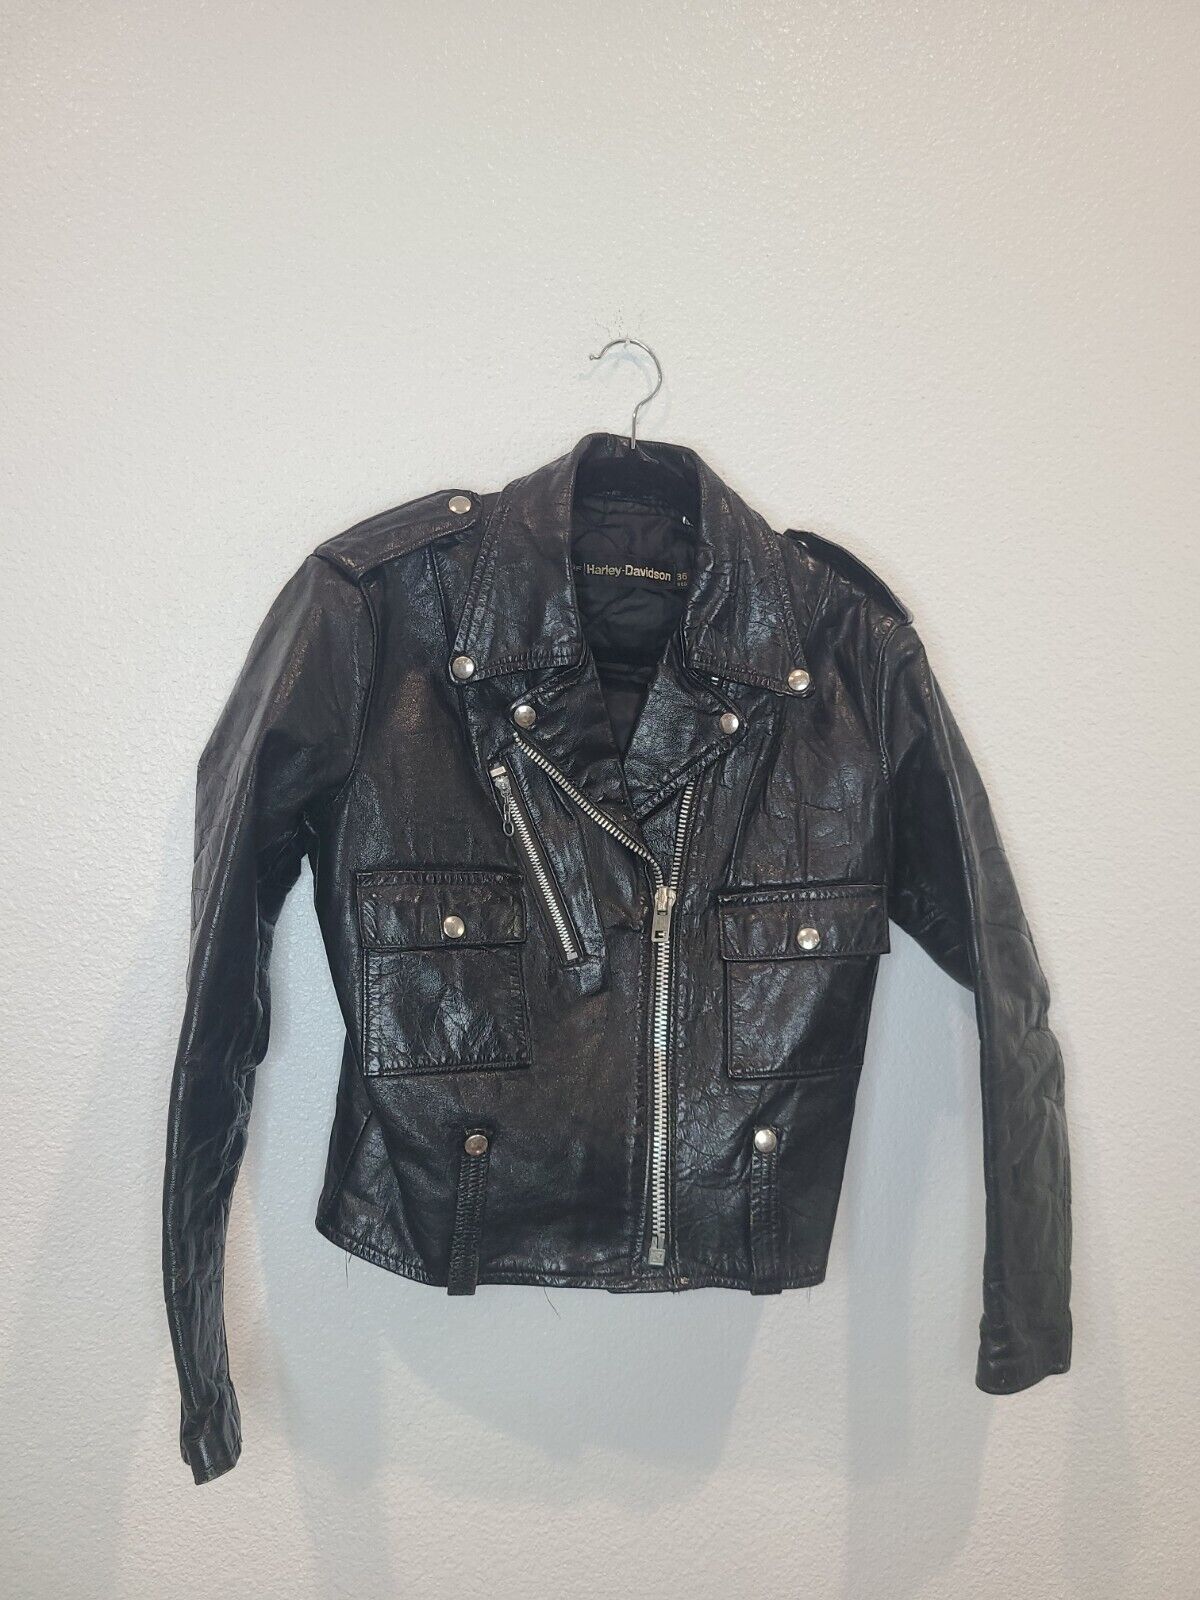 Vintage AMF Harley Davidson Black Leather Moto Jacket, 36 reg. Crop retro biker